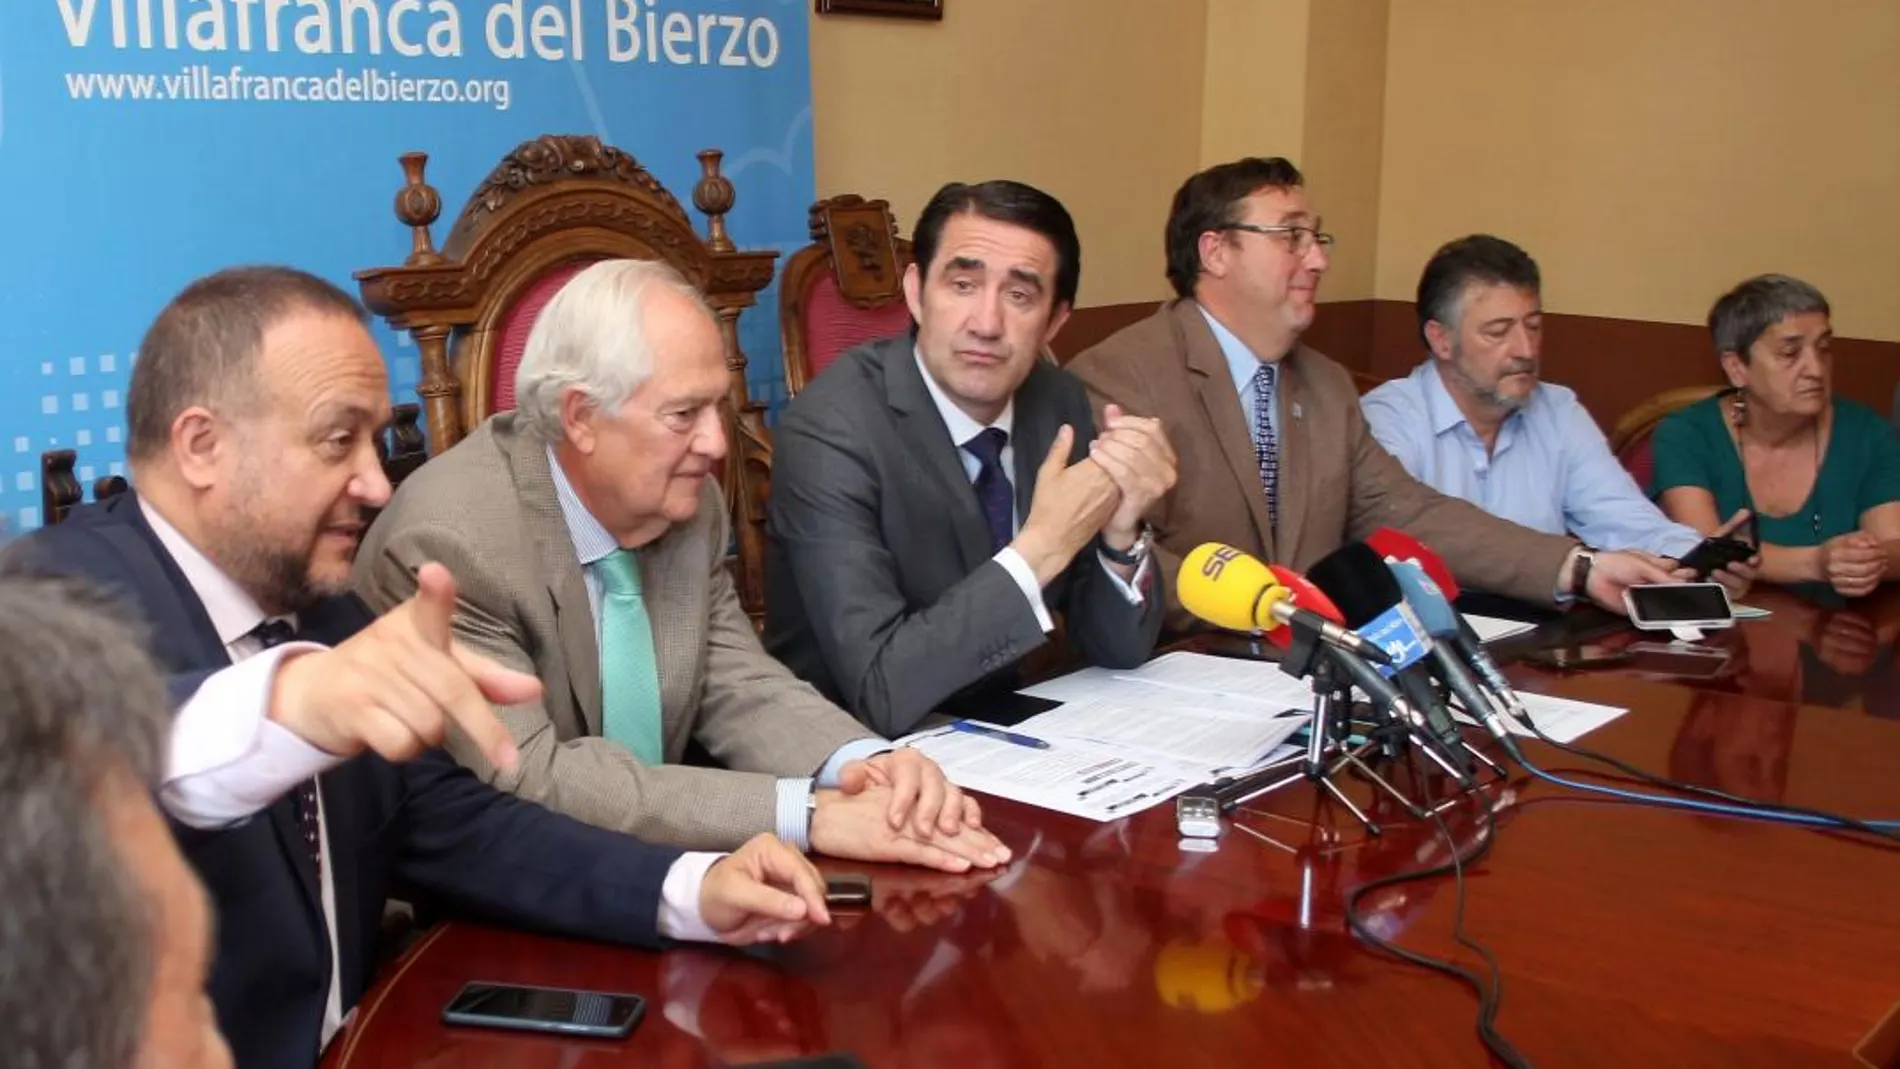 VilEl consejero de fomento, Juan Carlos Suárez-Quiñones, presenta el Plan 42 en la comunidad con cinco ayuntamientos de El Bierzo oeste, para la prevención de incendios con el lema “Bierzo libre de incendios”